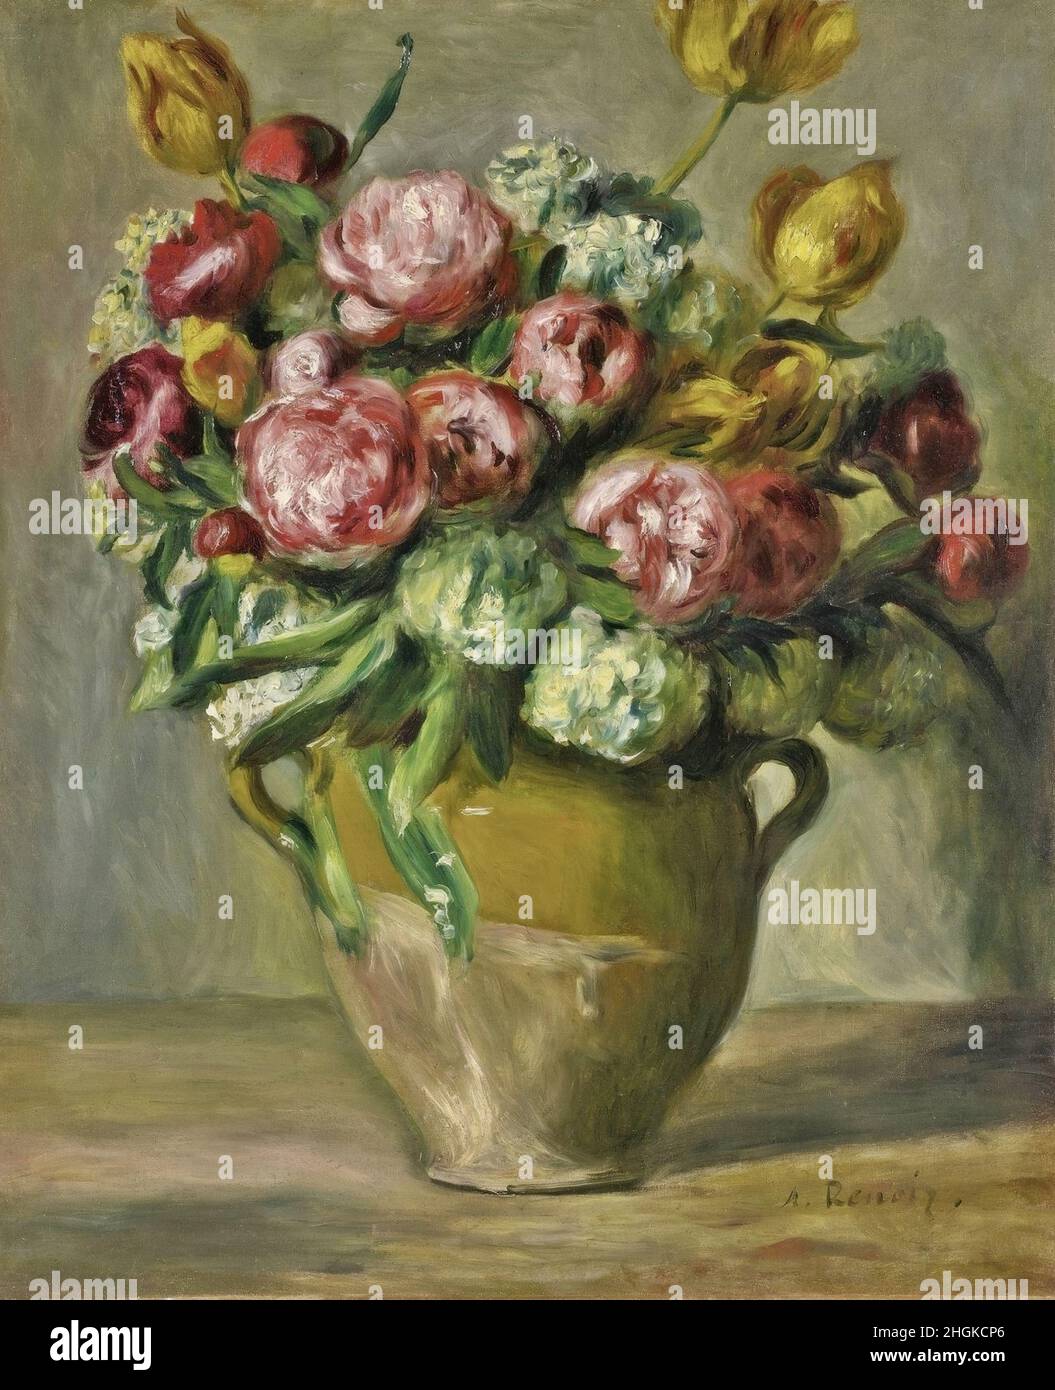 Renoir Auguste - Private Collection - Vase de pivoines - 1872c. - Oil on canvas 57 x 47 cm Stock Photo